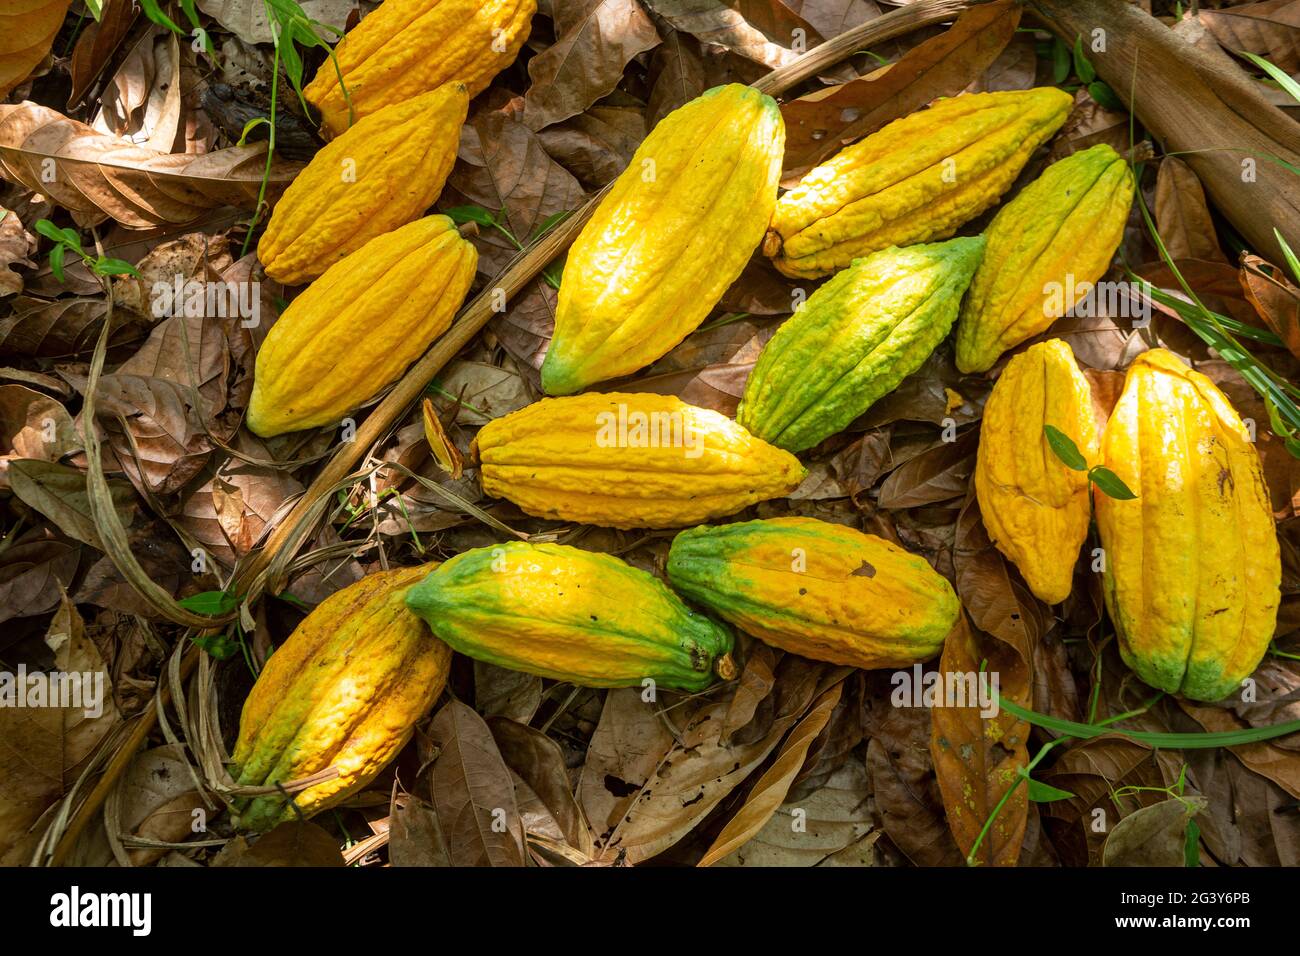 Gros plan de fruits frais de cacao pour la fabrication de chocolat sur la récolte agricole dans la forêt amazonienne. Alimentation, écologie, environnement, biodiversité, agroculture. Banque D'Images